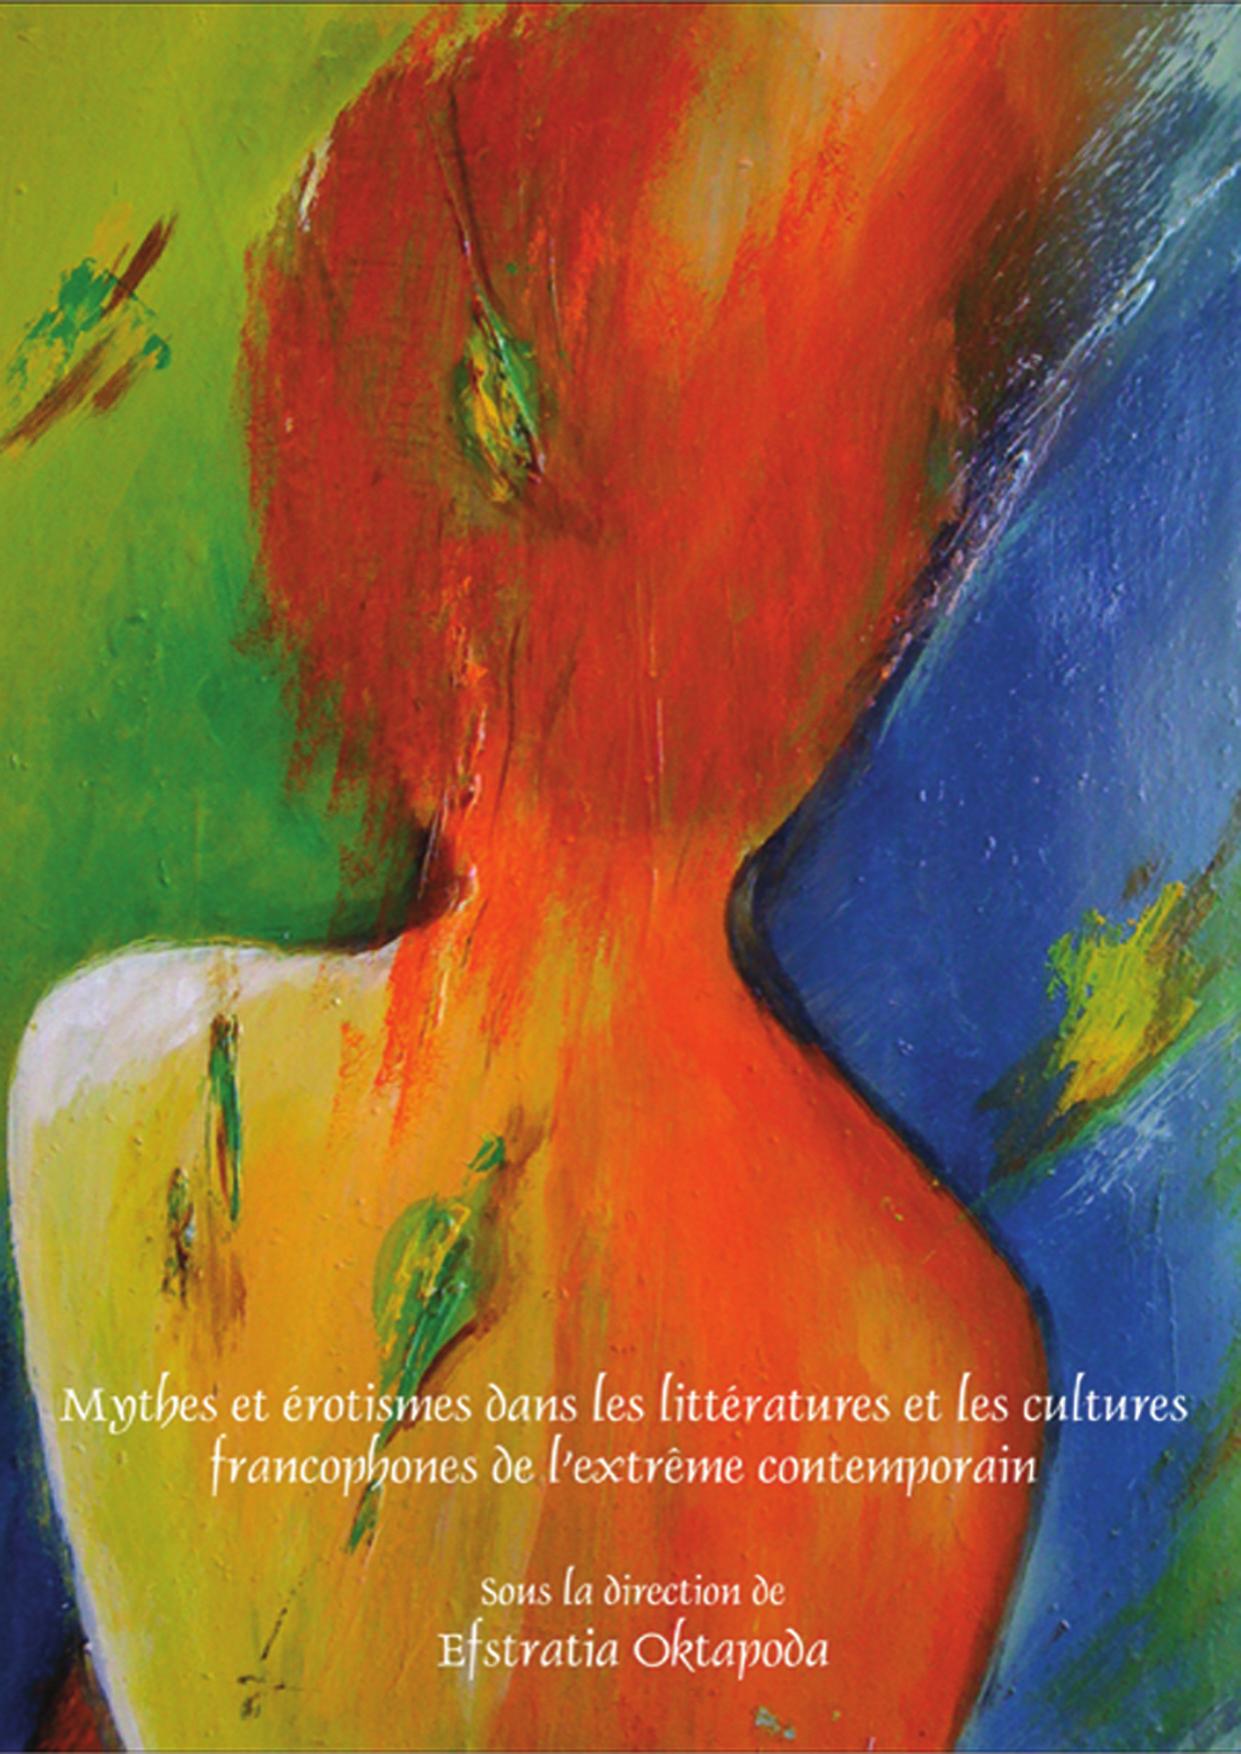 Mythes et érotismes dans les littératures et les cultures francophones de l’extrême contemporain